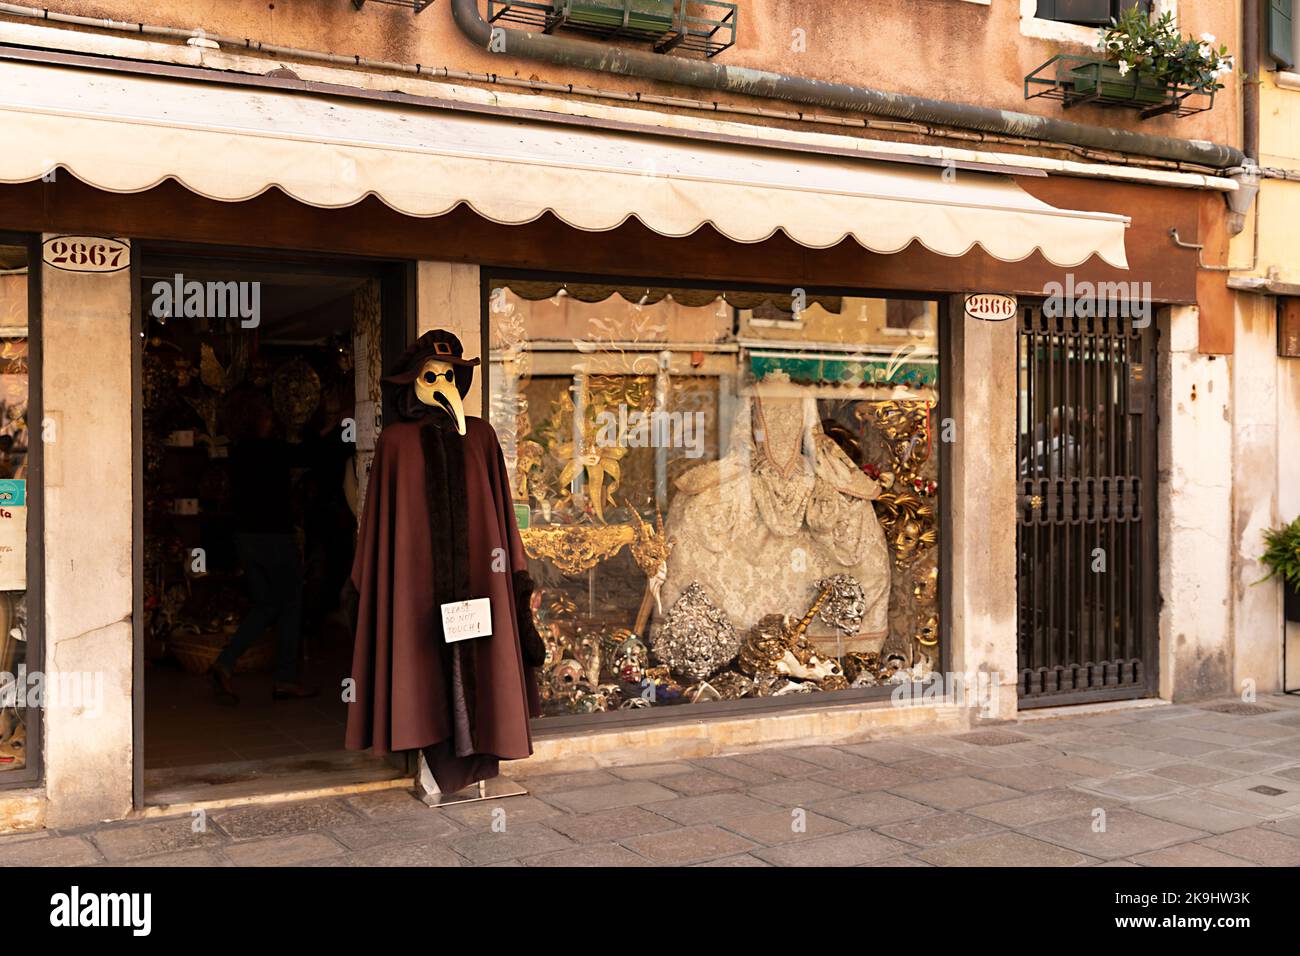 Der Laden in Venedig mit traditioneller venezianischer Kleidung für Karneval und Pestarzt-Kostüm auf der Vitrine Stockfoto